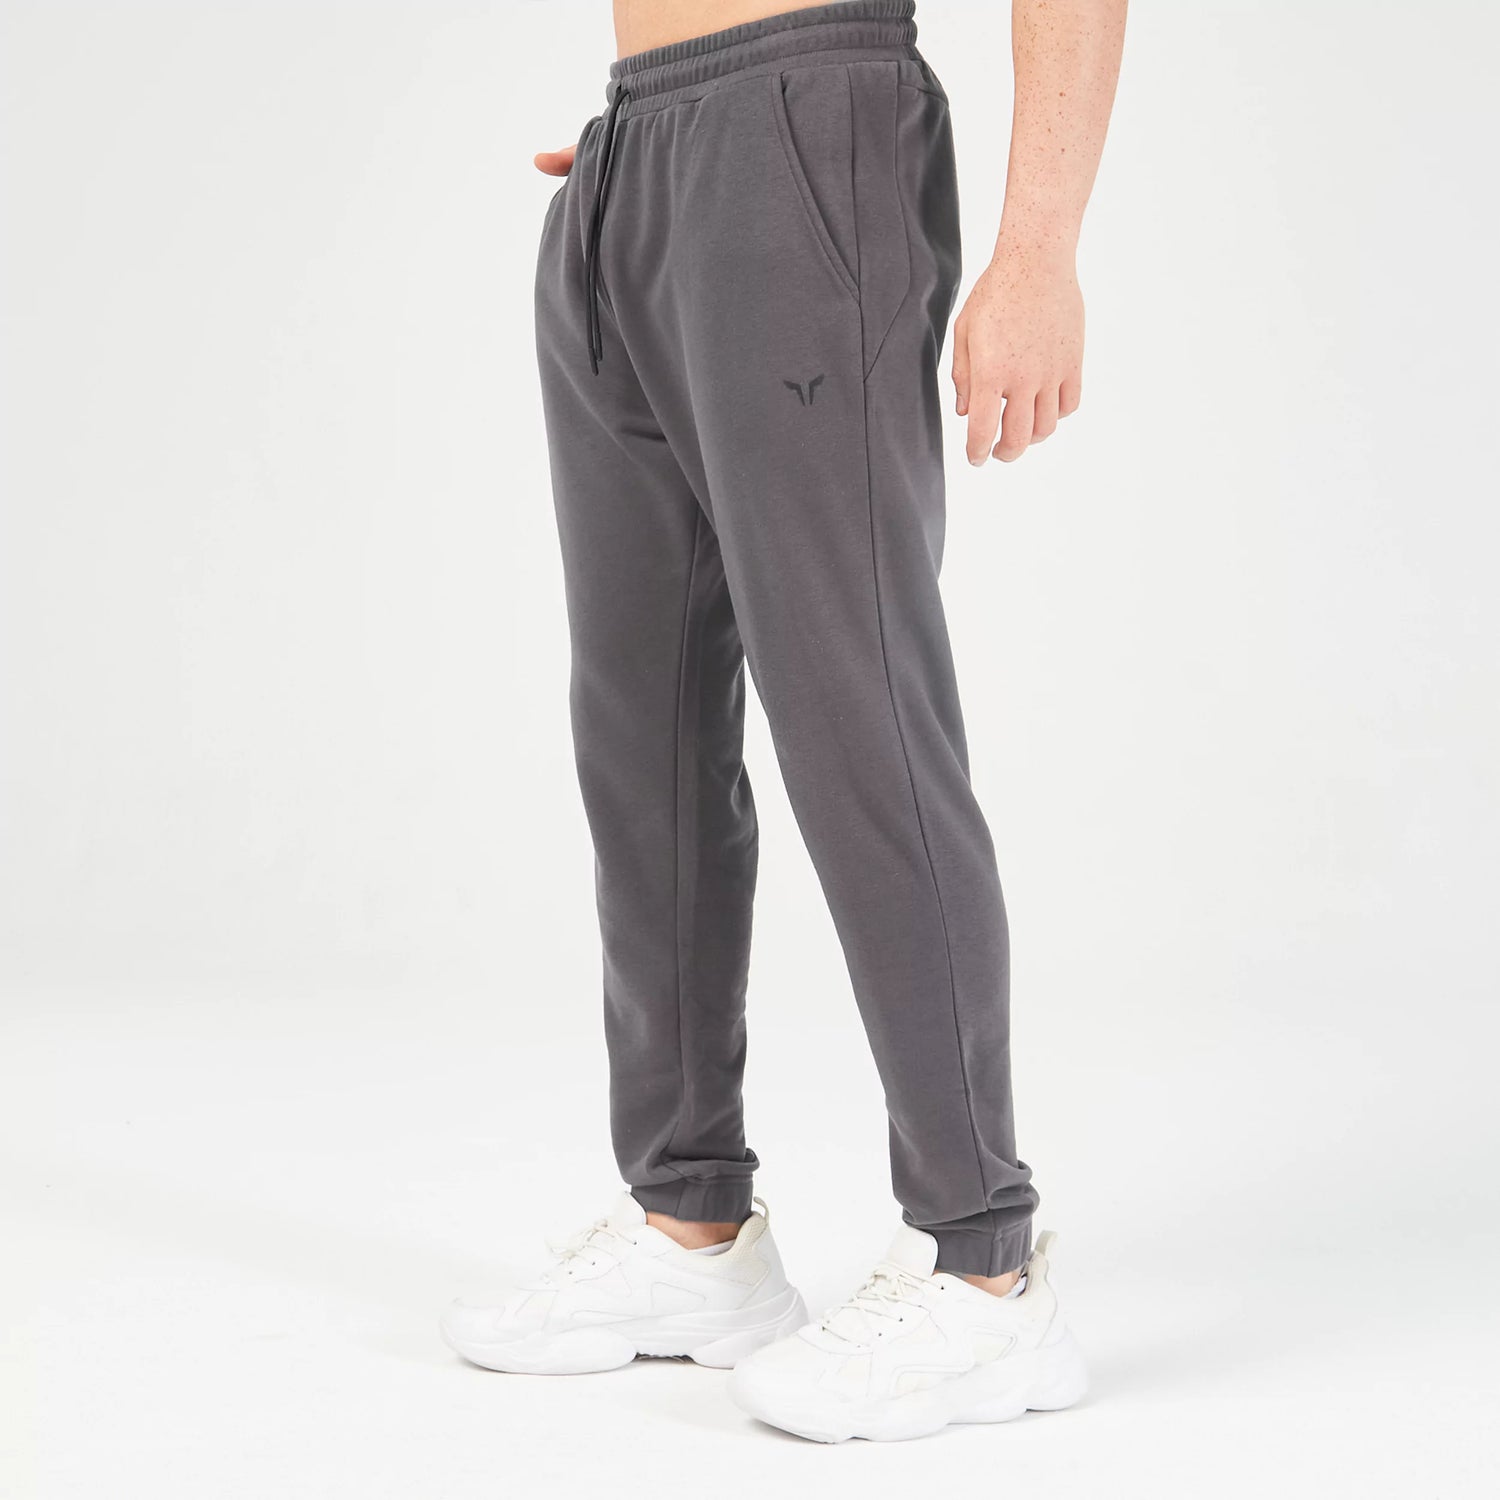 squatwolf-gym-wear-essential-jogger-pant-asphalt-workout-pants-for-men